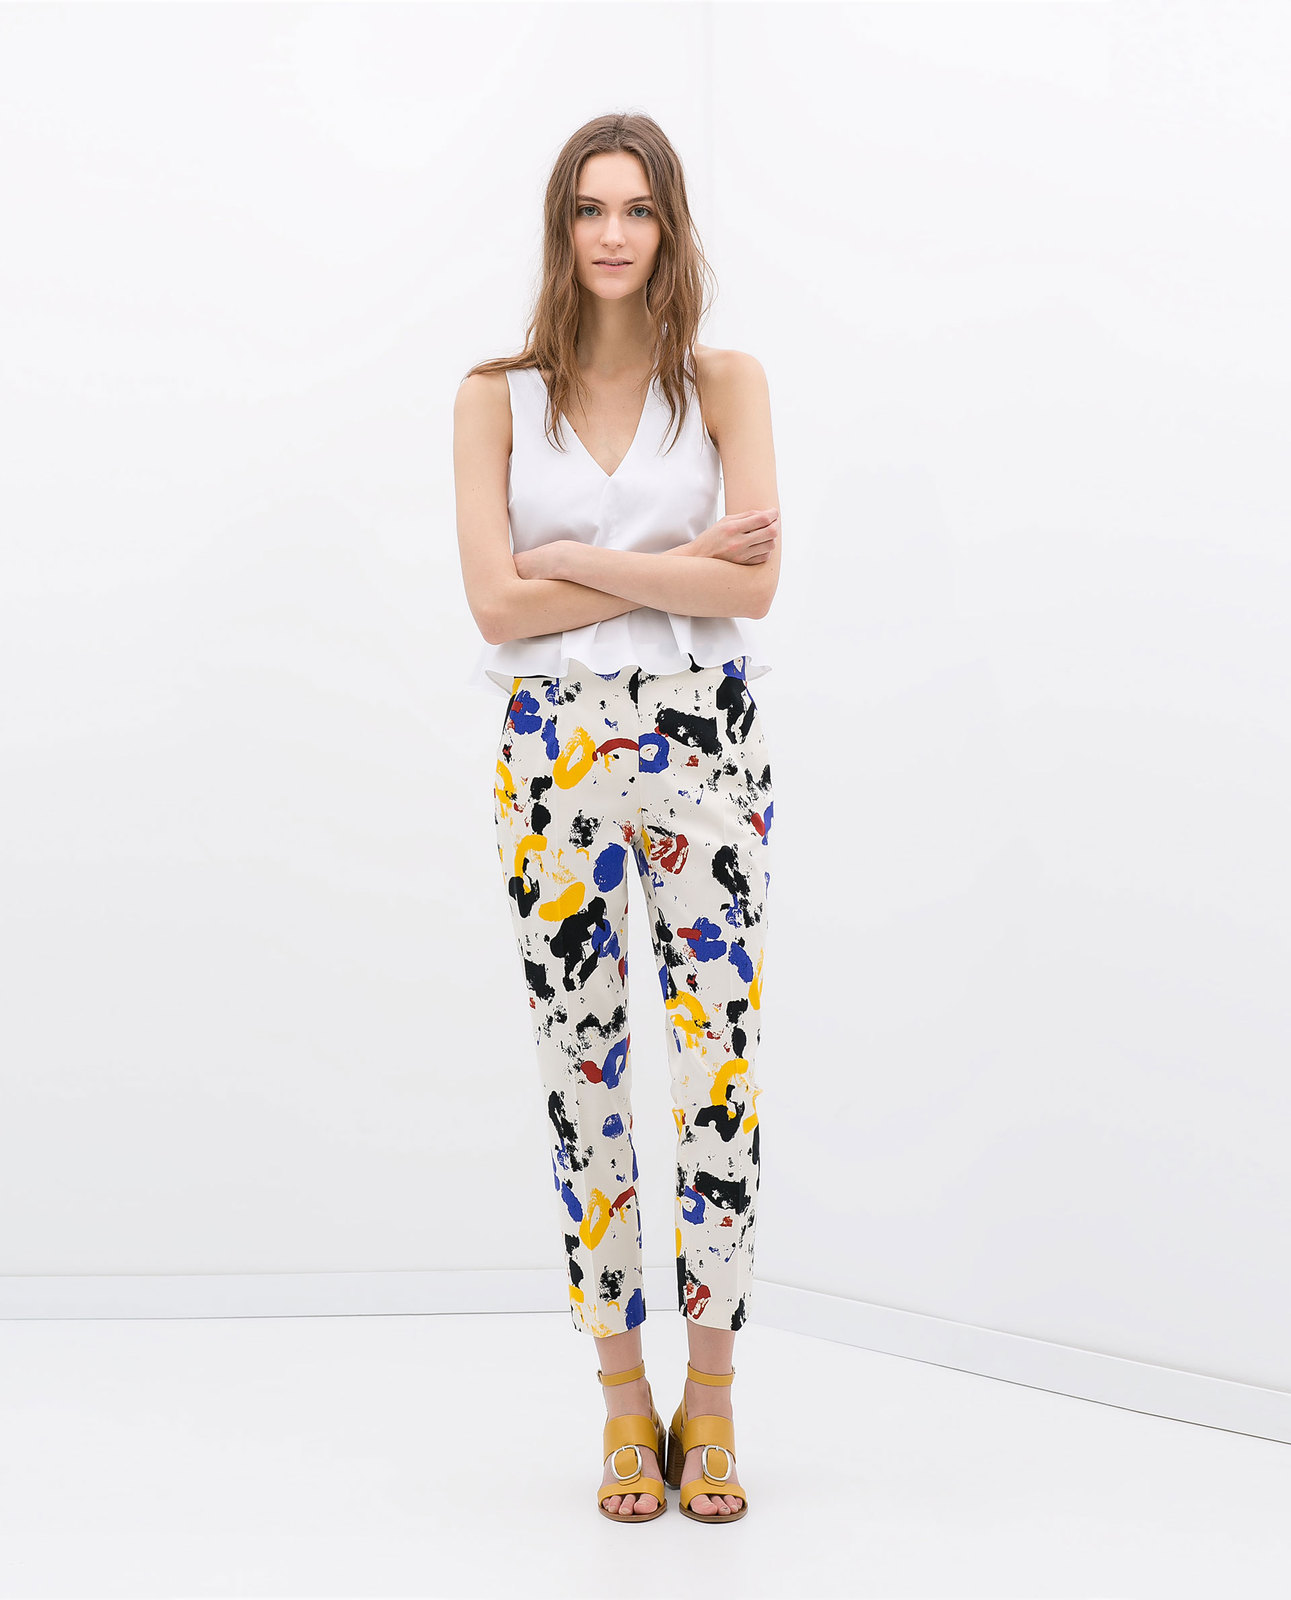 Zara festékmintás színes nadrág fotója